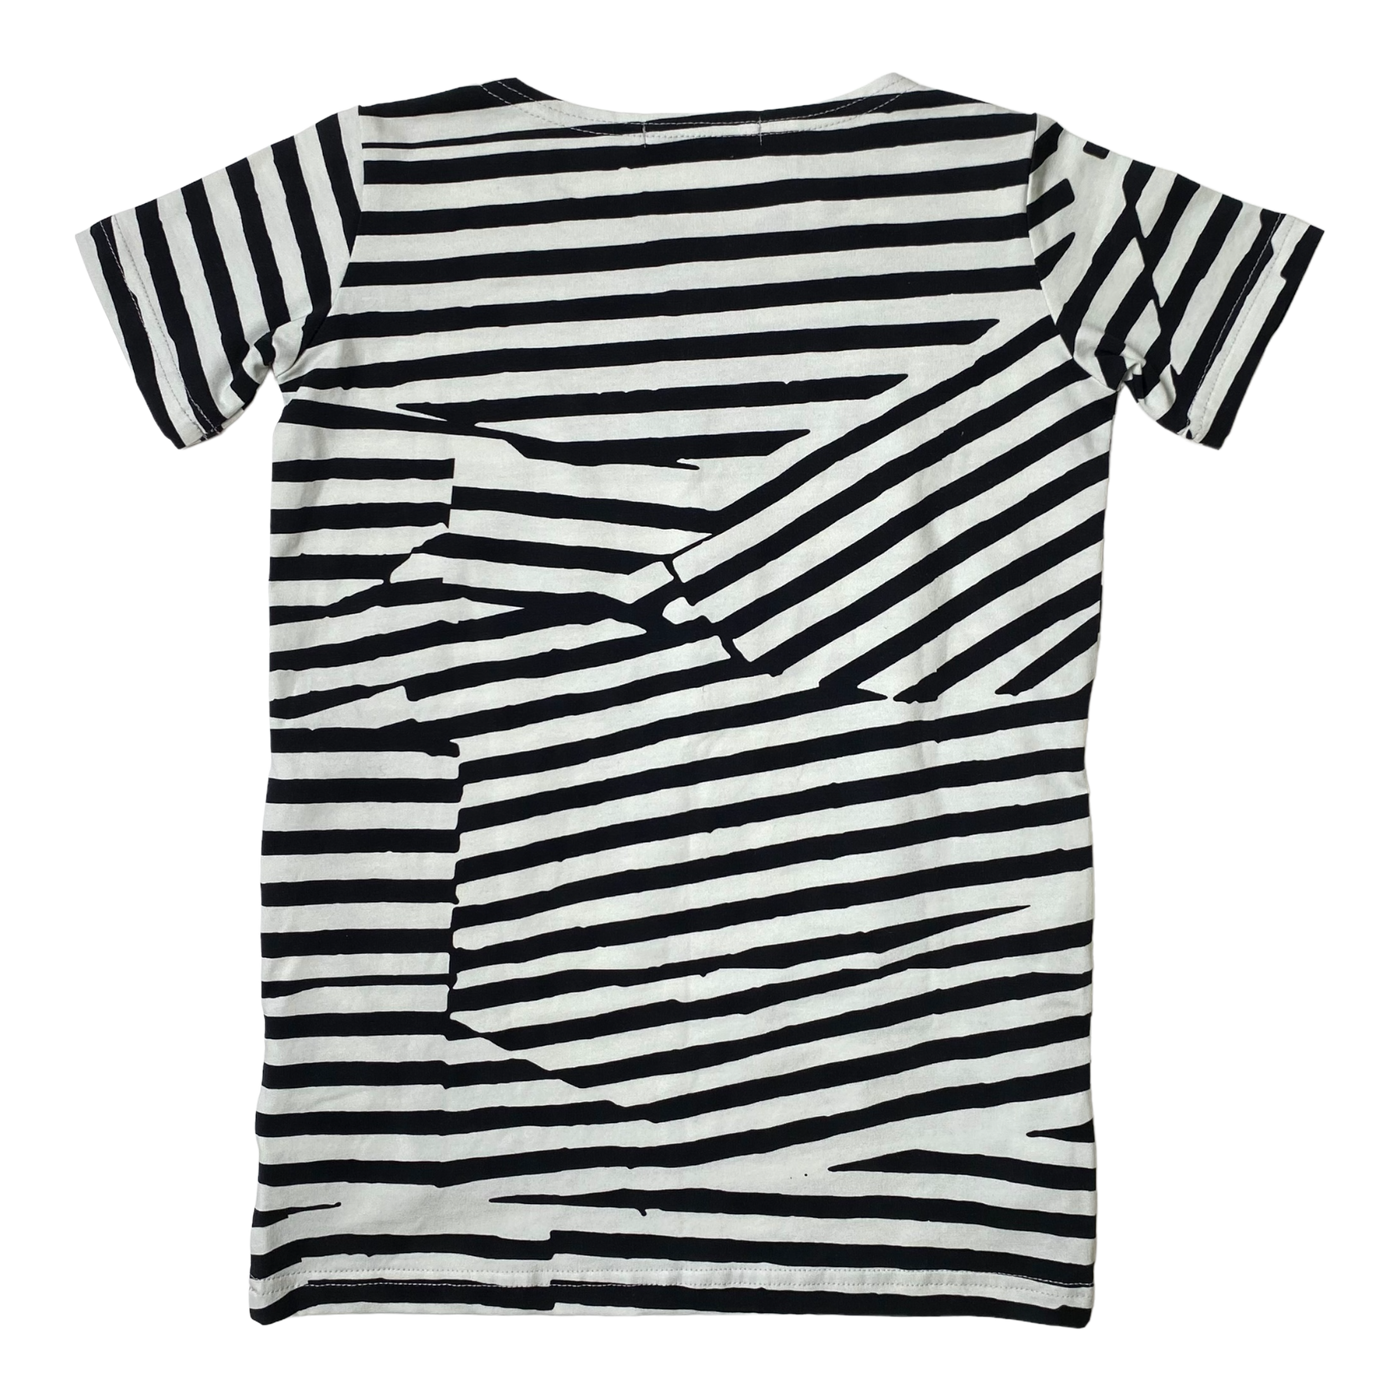 Vimma stripe dress, black/white | 100cm